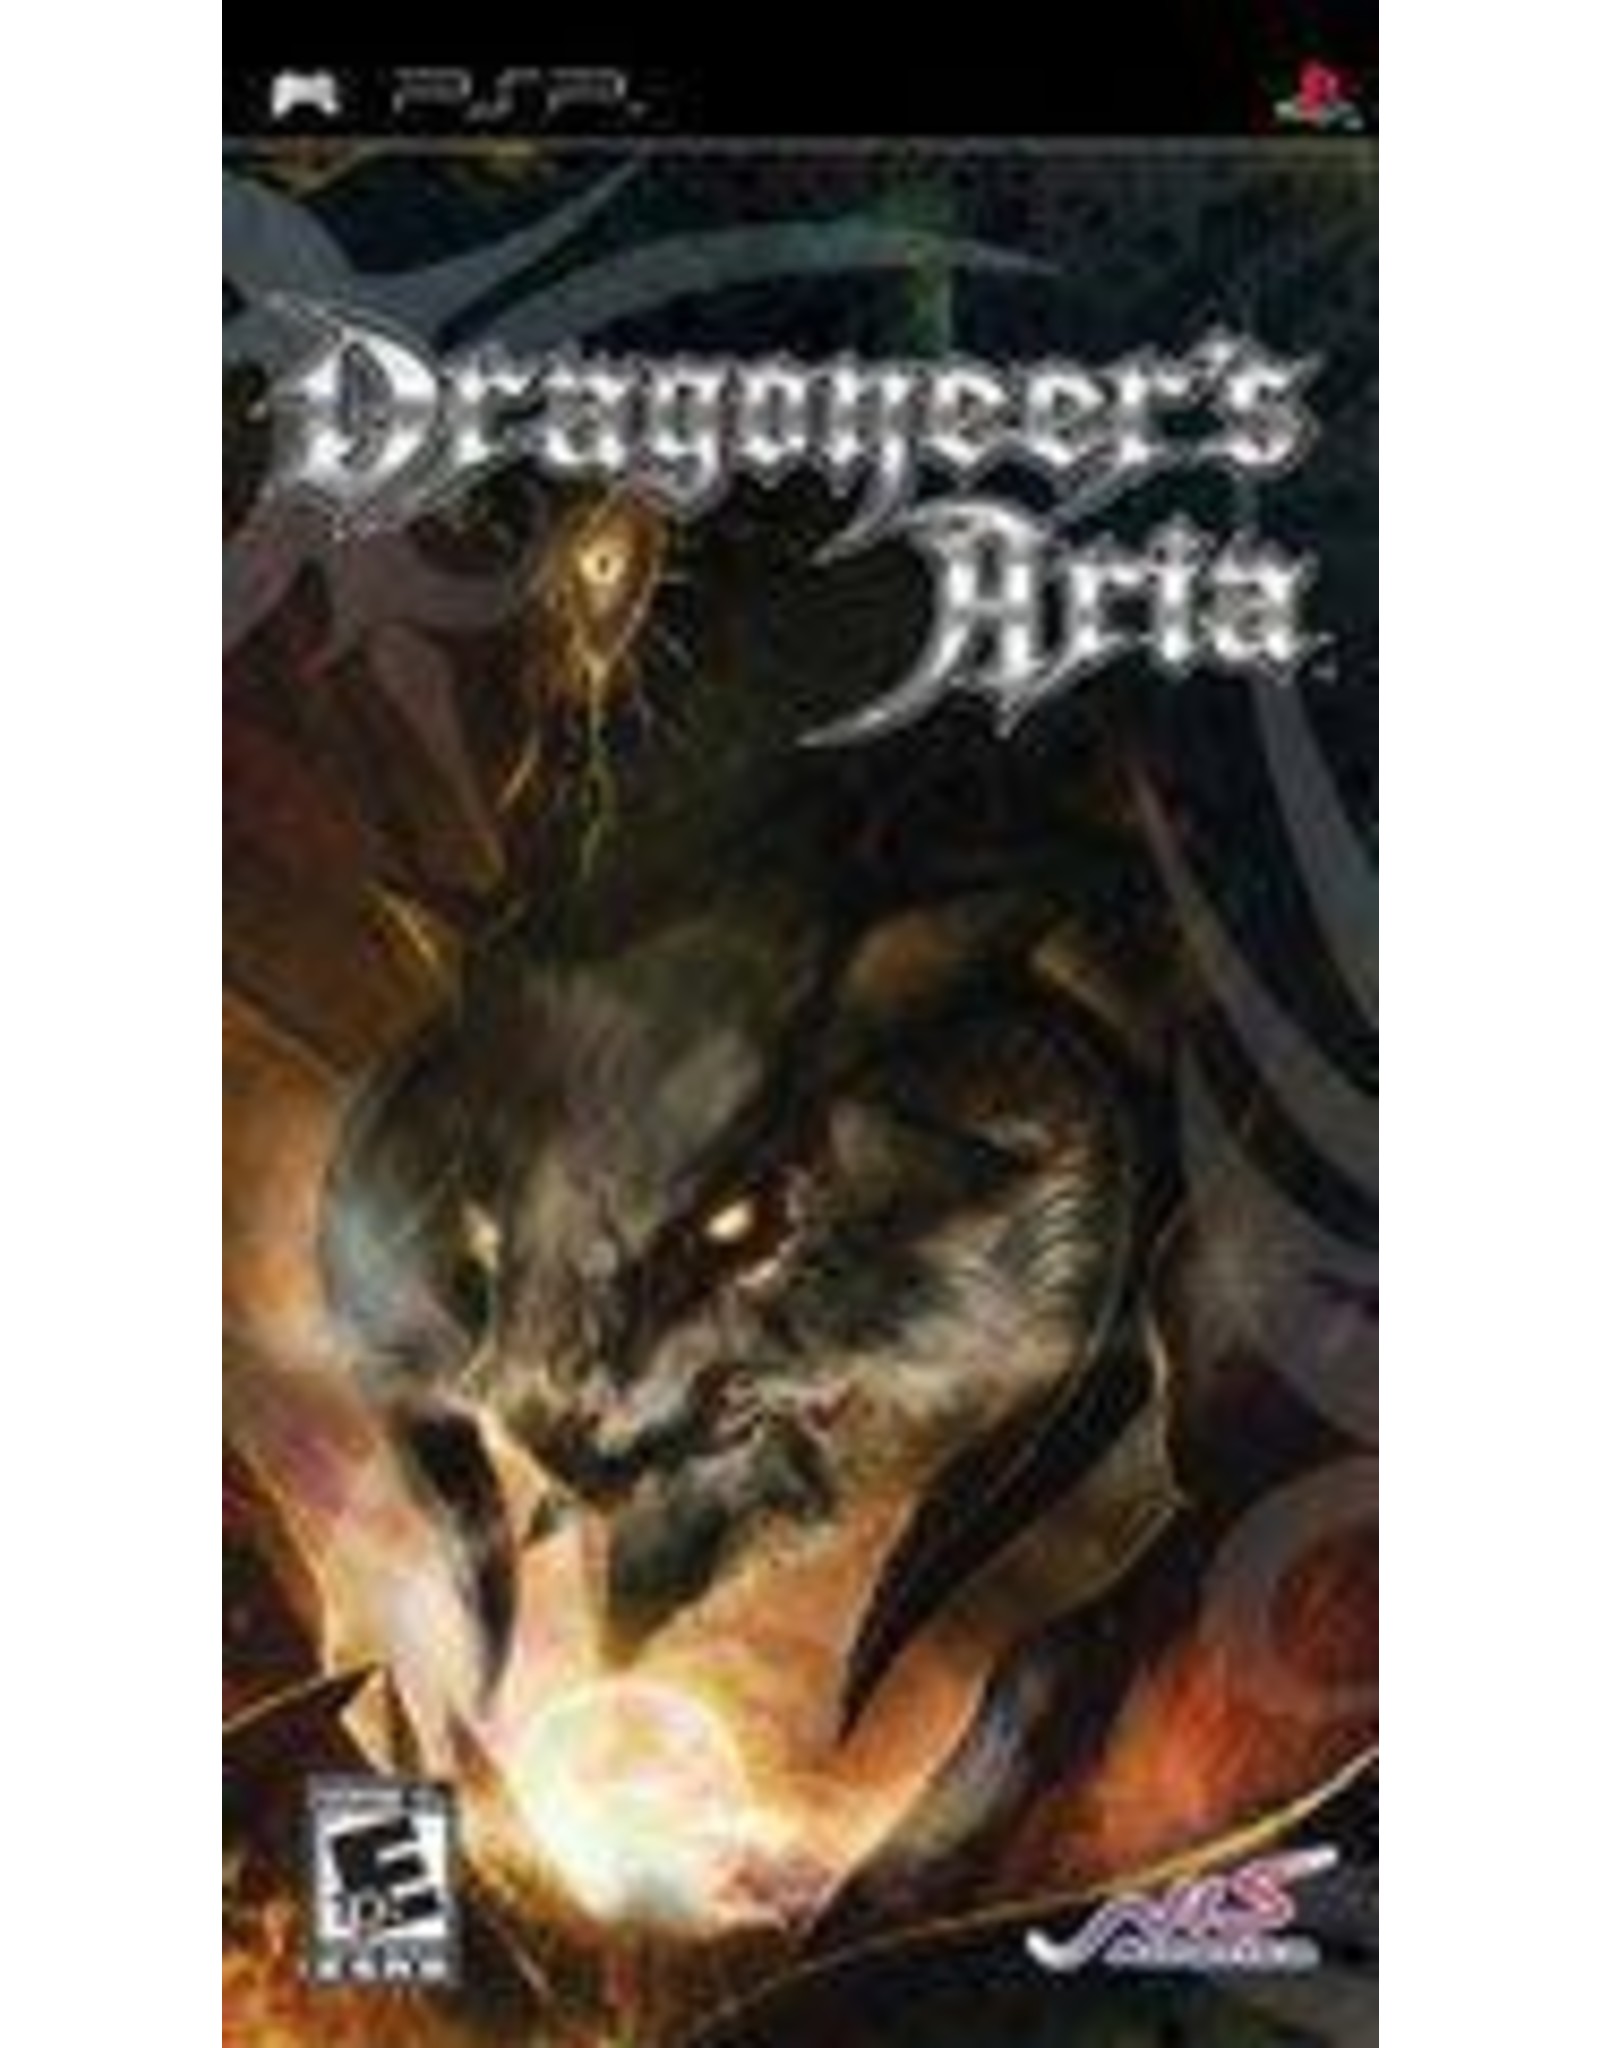 PSP Dragoneer's Aria (CiB)